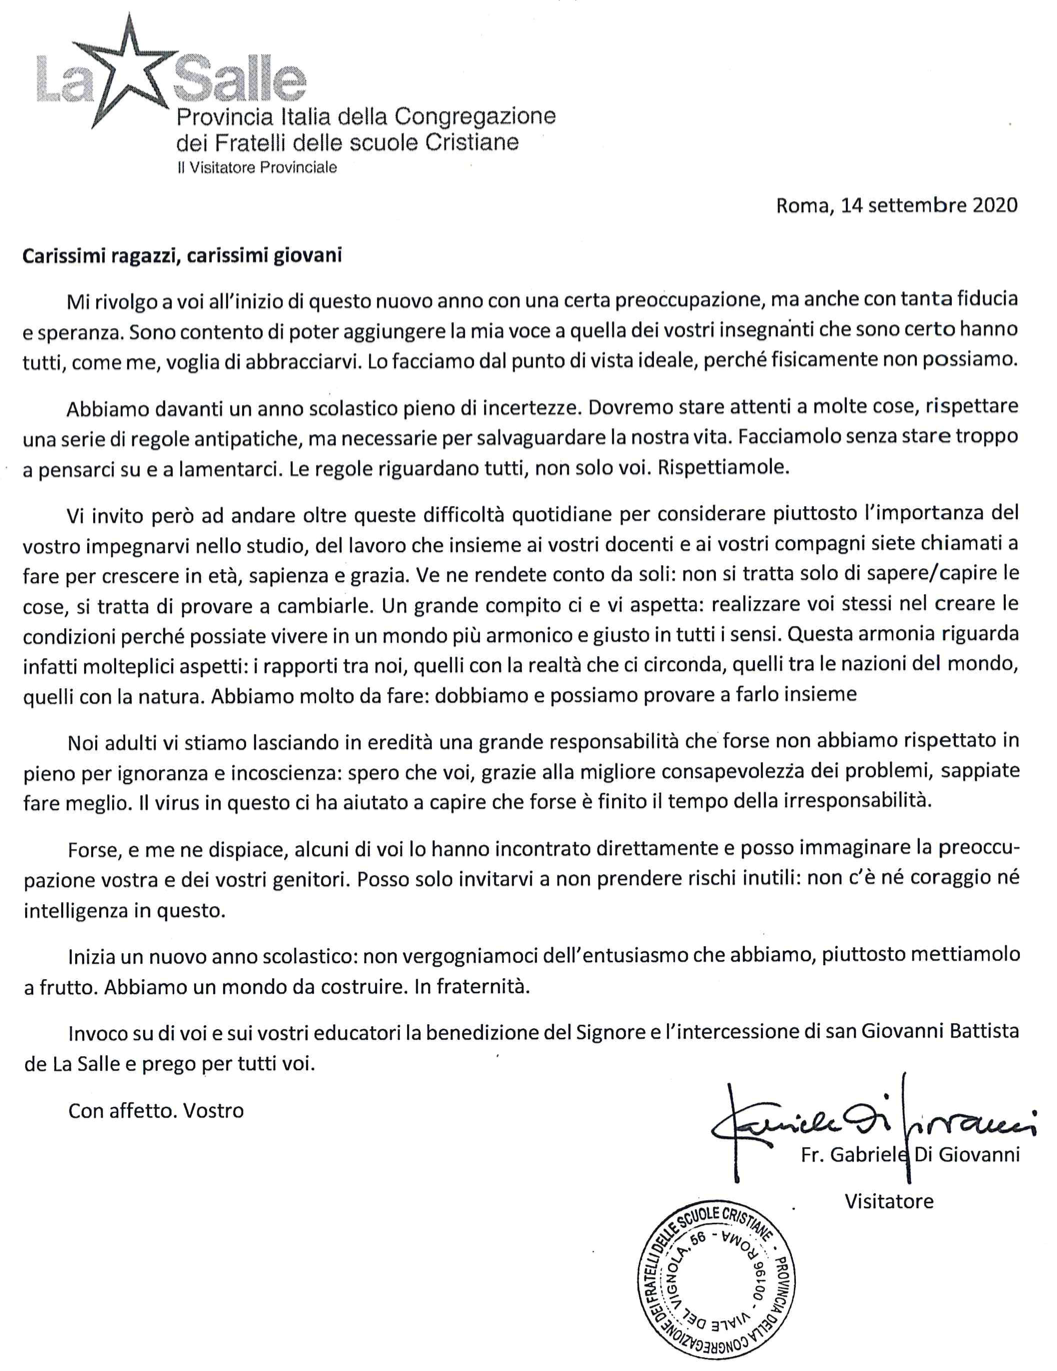 Lettera Inizio Anno Scolastico 2020-2021 Visitatore Provinciale Fratel Gabriele Di Giovanni